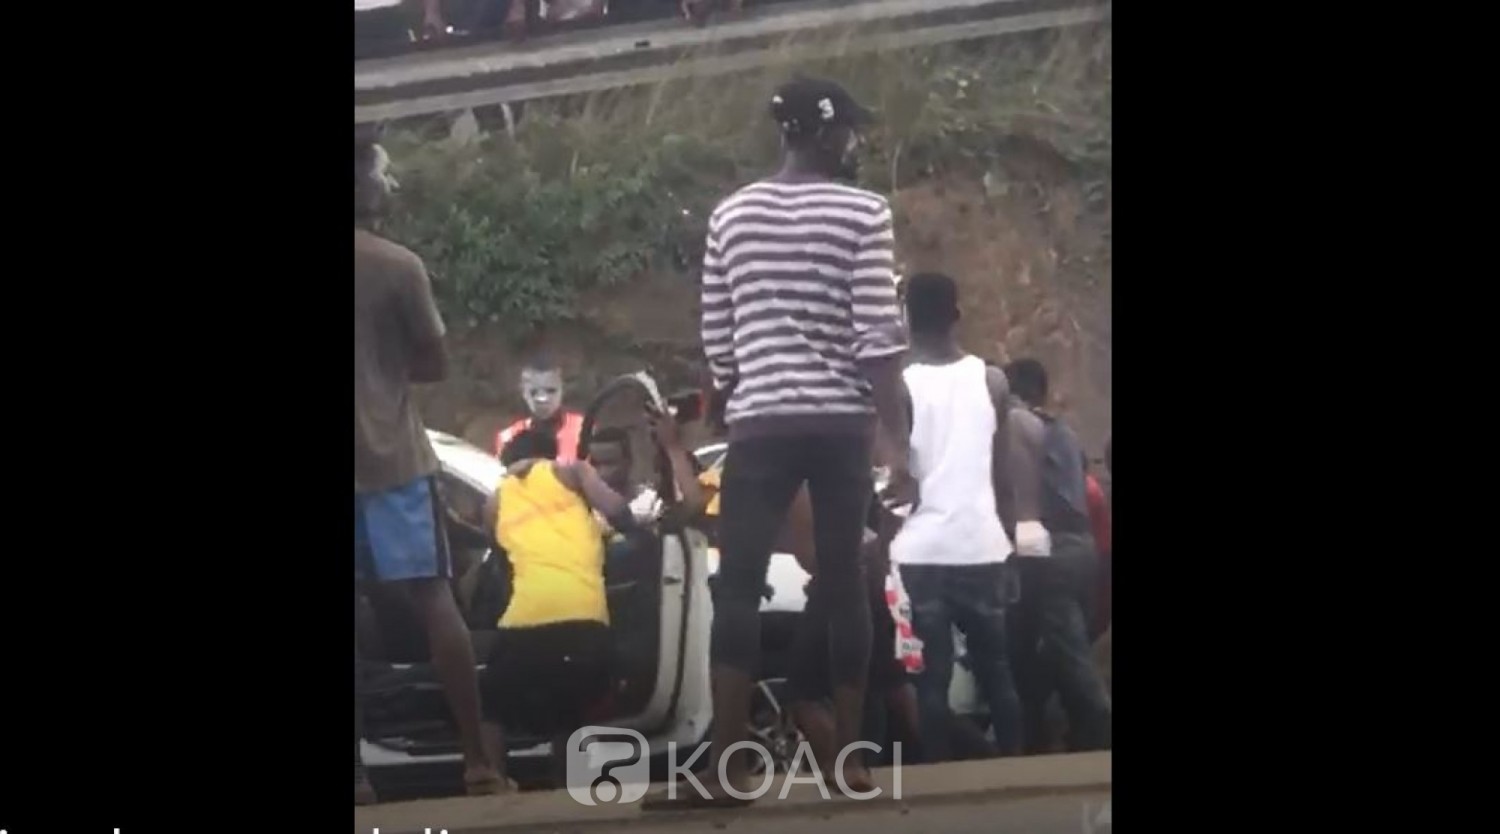 Côte d'Ivoire: Après avoir déterré le corps de DJ Arafat, arrestation d'une dizaine de ses fans qui tentaient de prendre d'assaut Ivosep